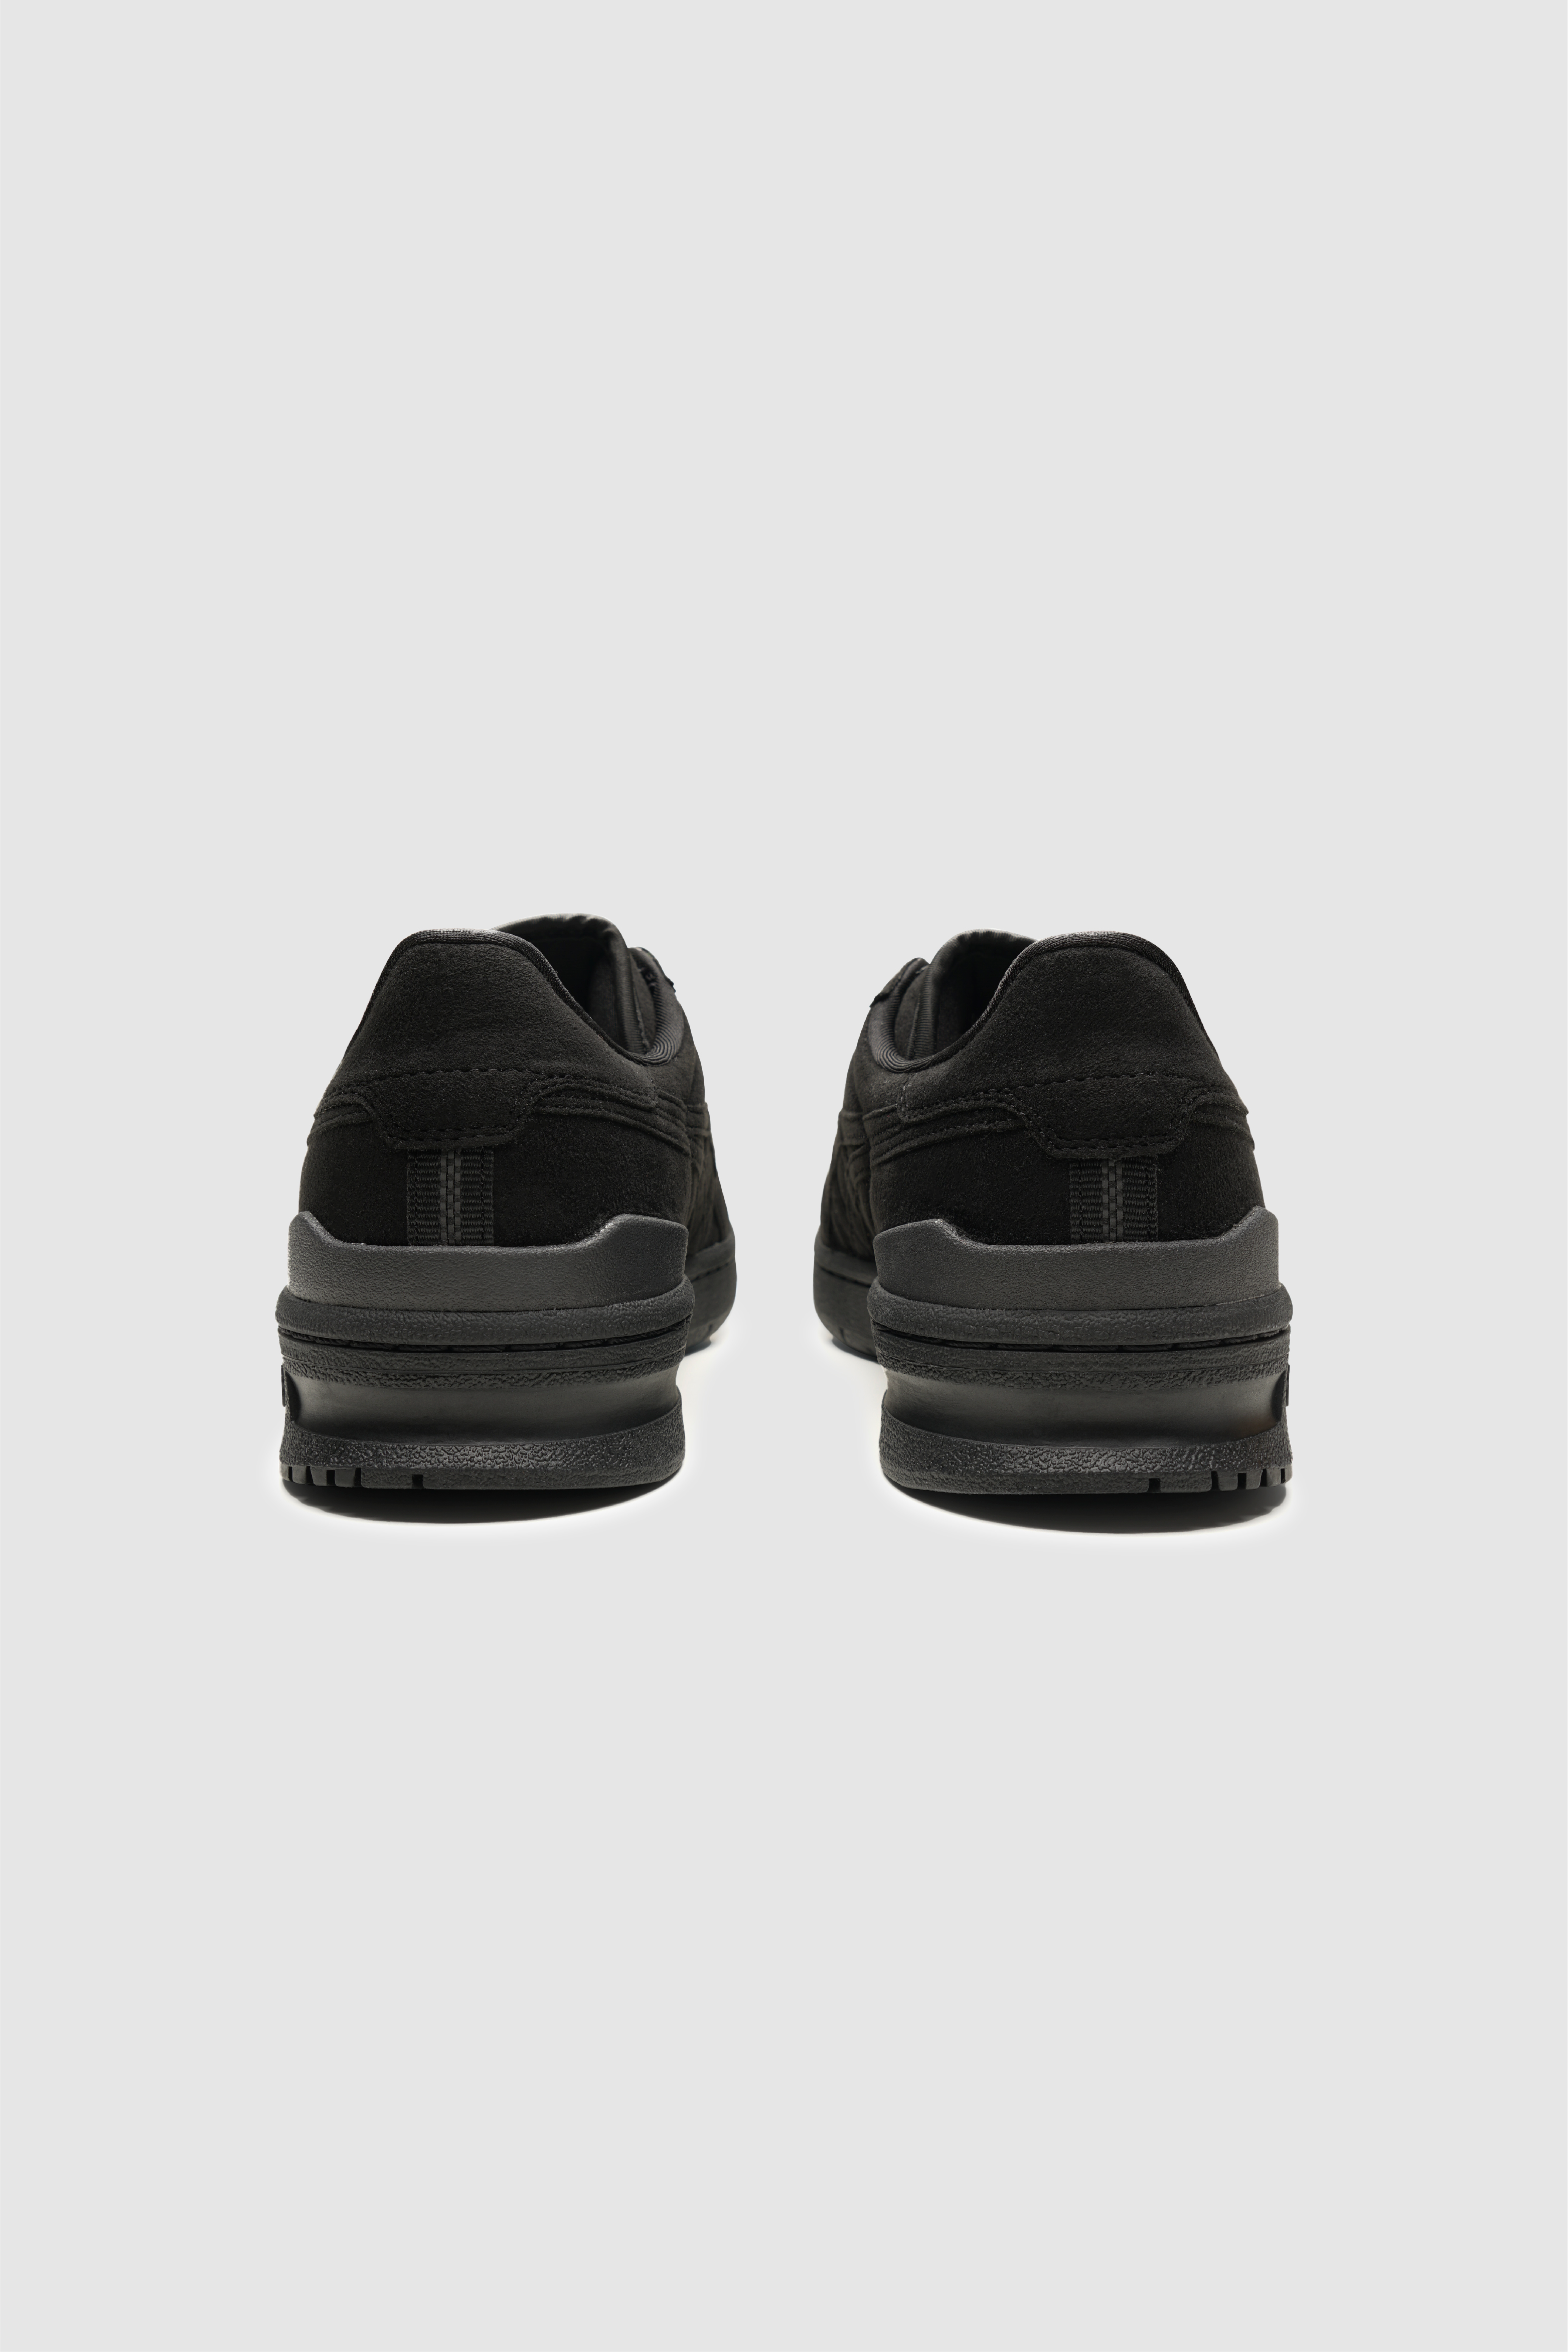 Selectshop FRAME - COMME DES GARÇONS SHIRT CDG Shirt x Asics Footwear Concept Store Dubai